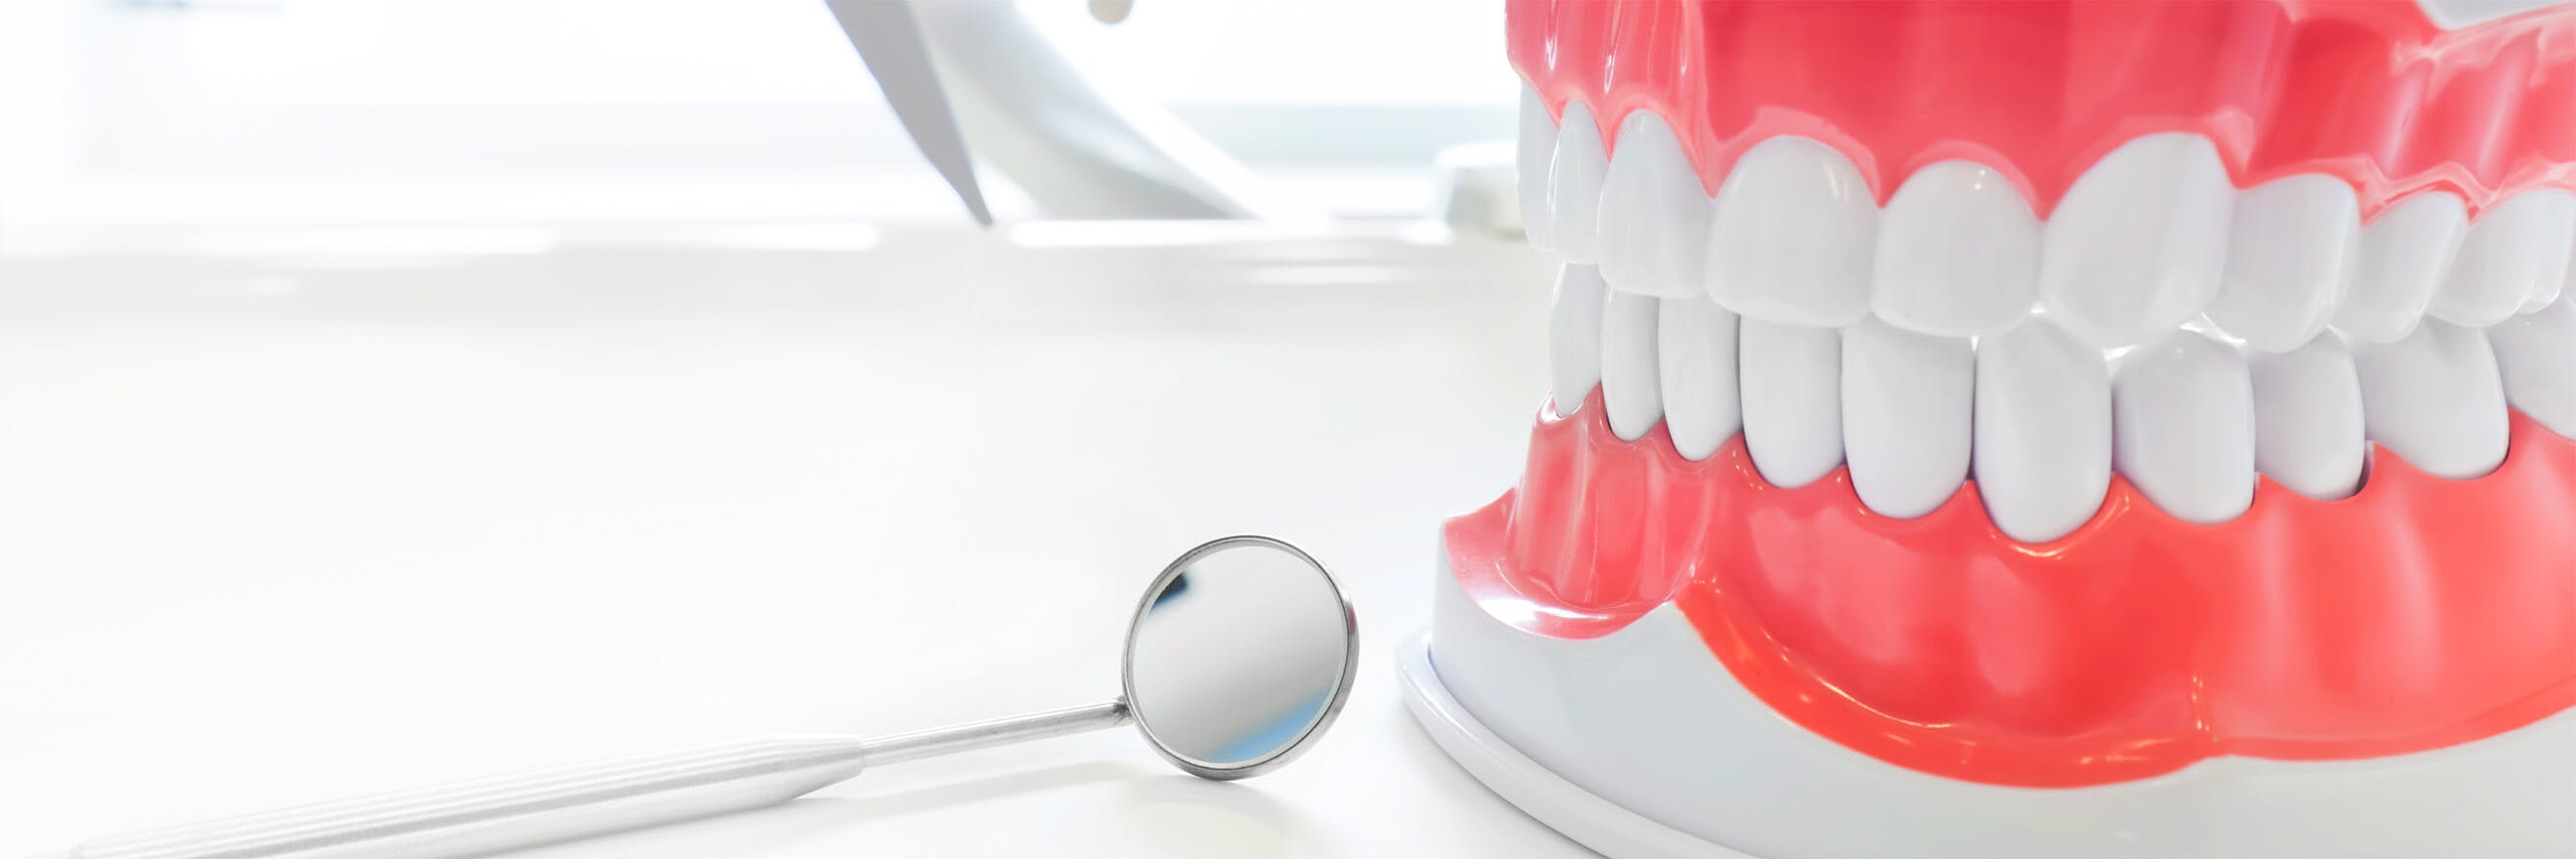 Model zubního aparátu vedle kterého leží dentální zrcátko